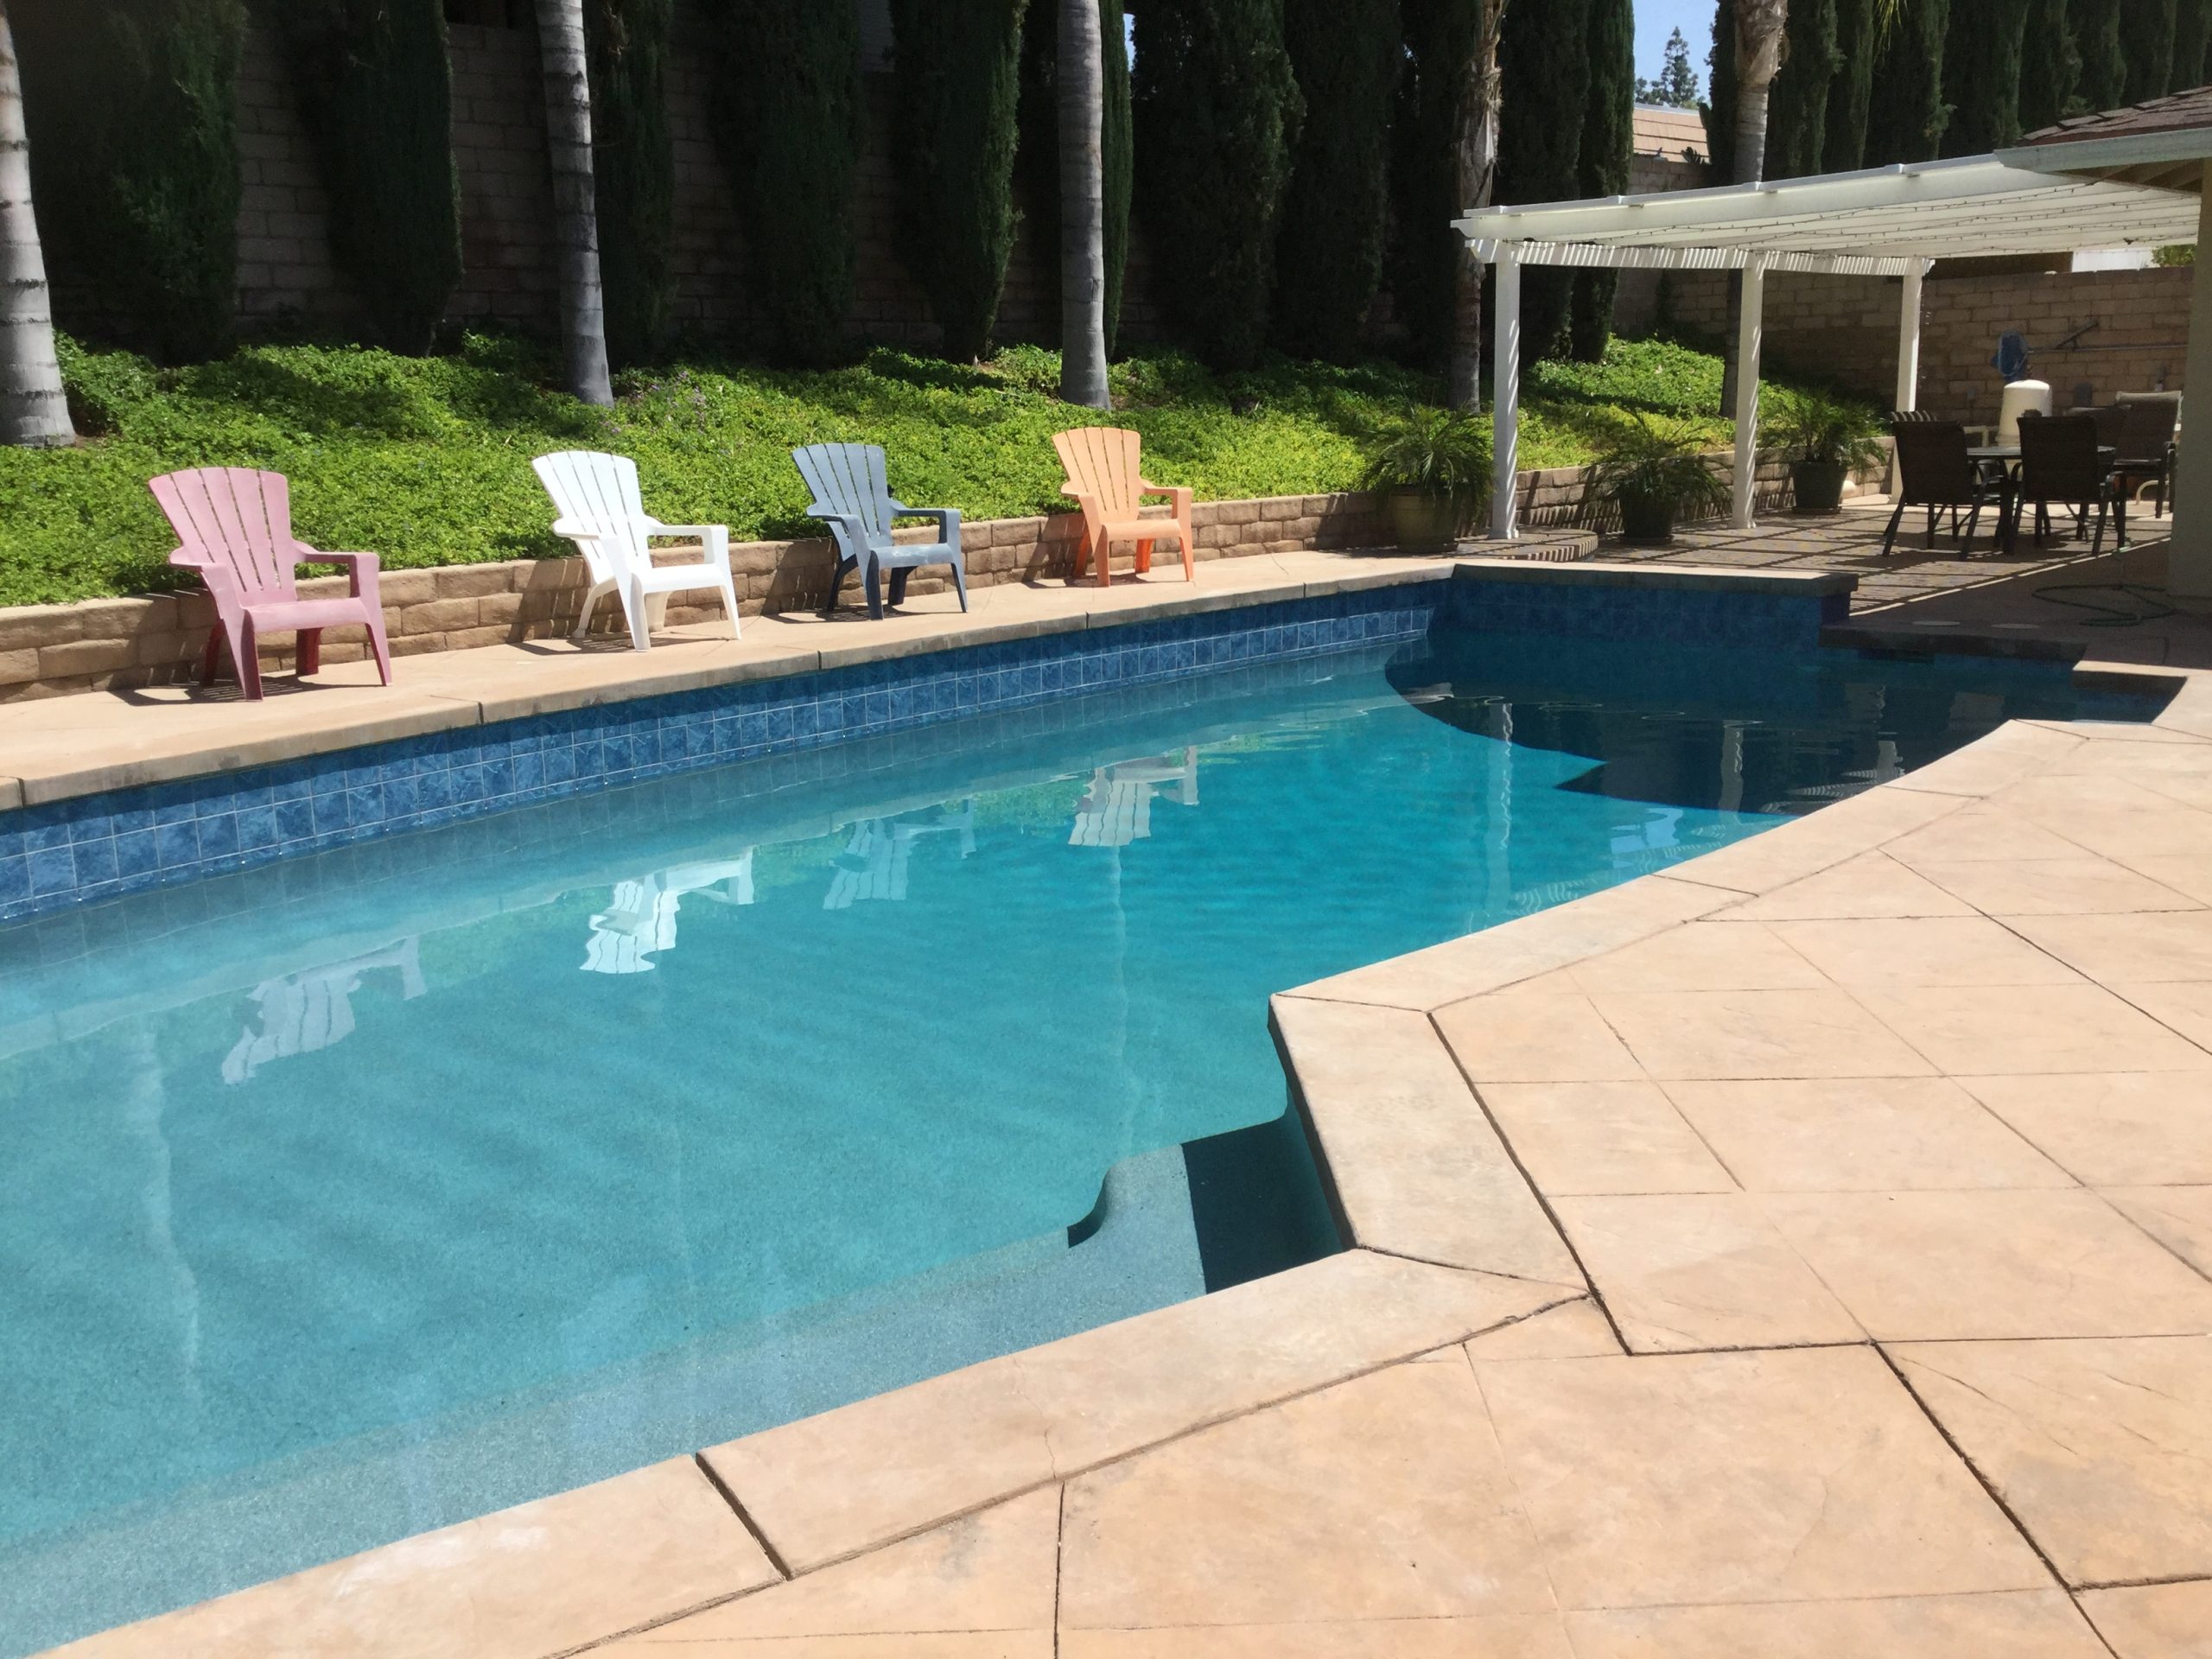 pool repair| The California Pool & Spa Company